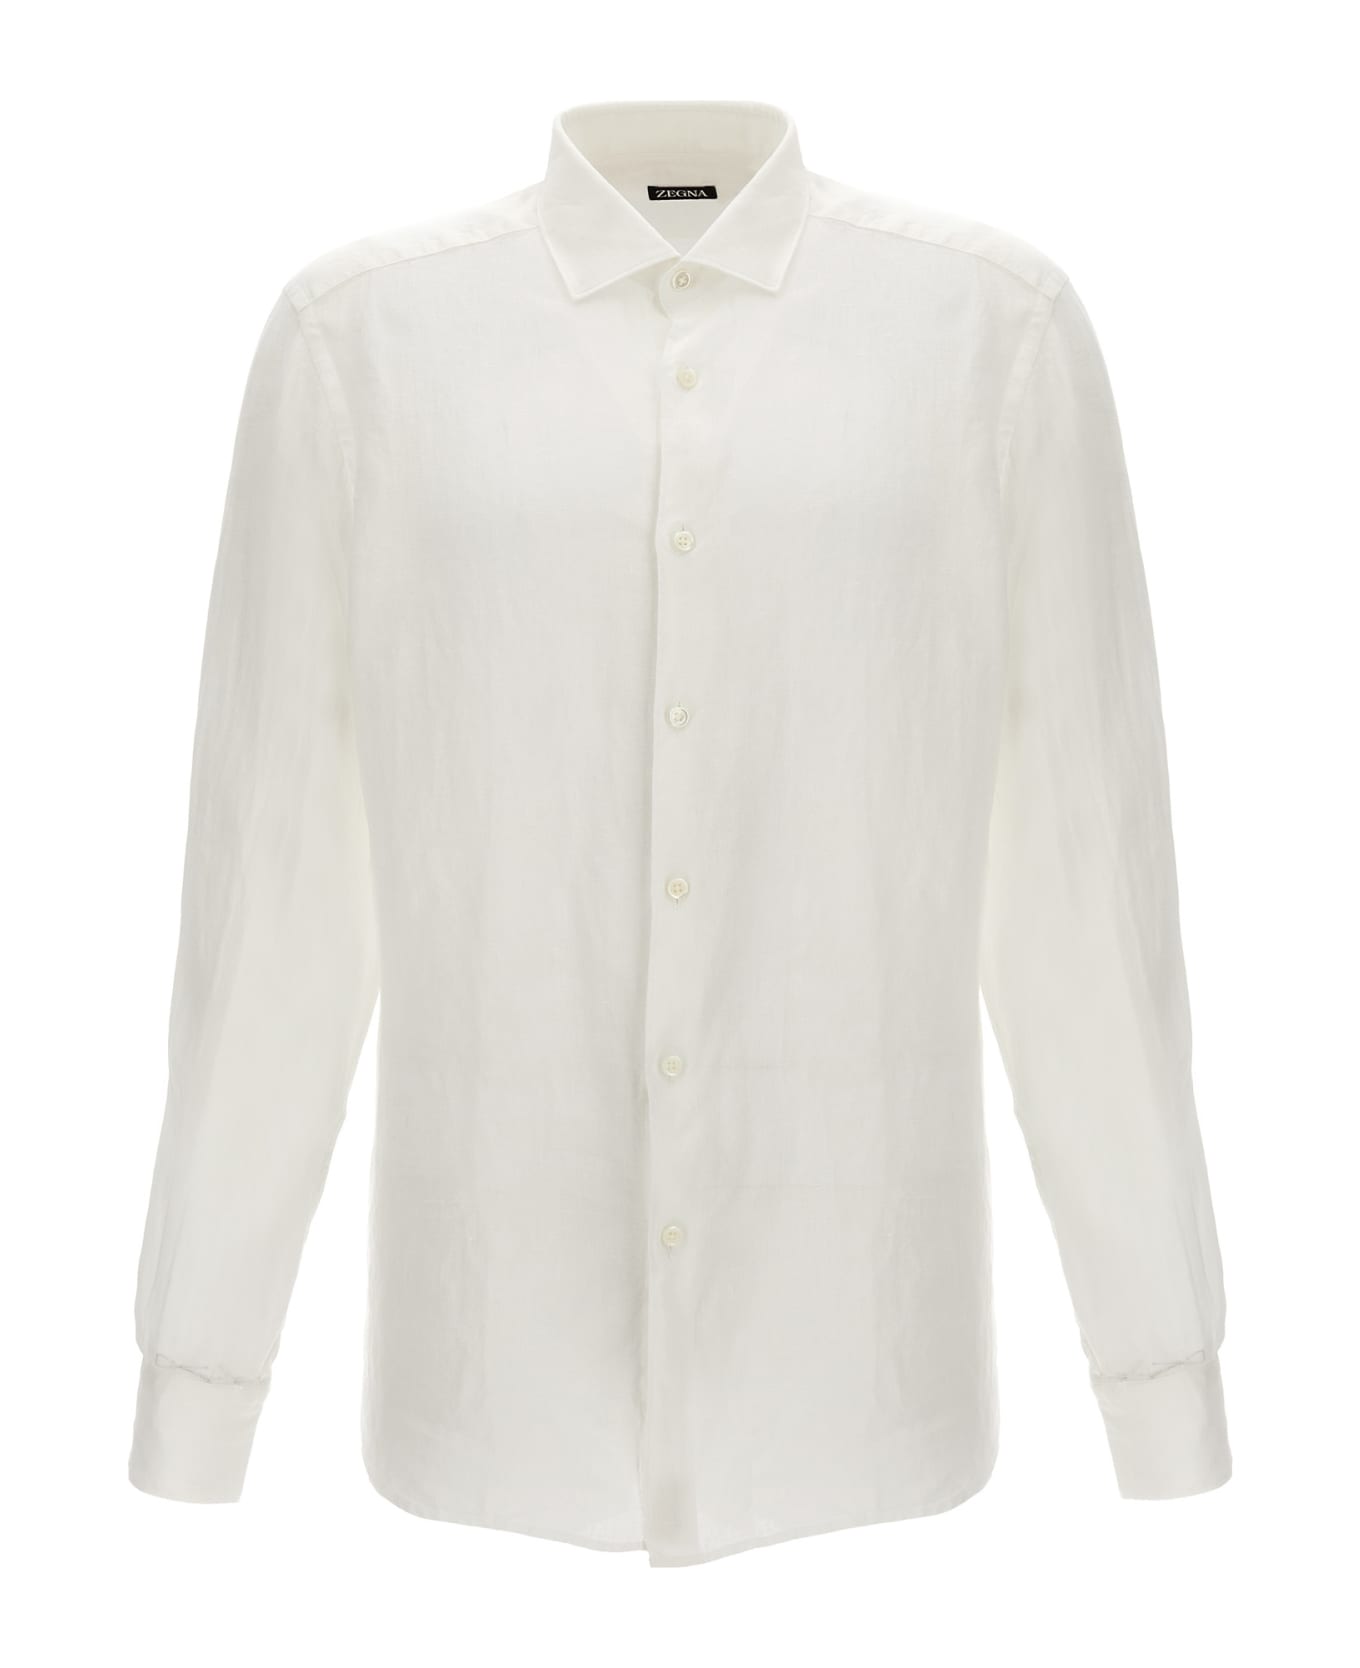 Zegna Linen Shirt - White